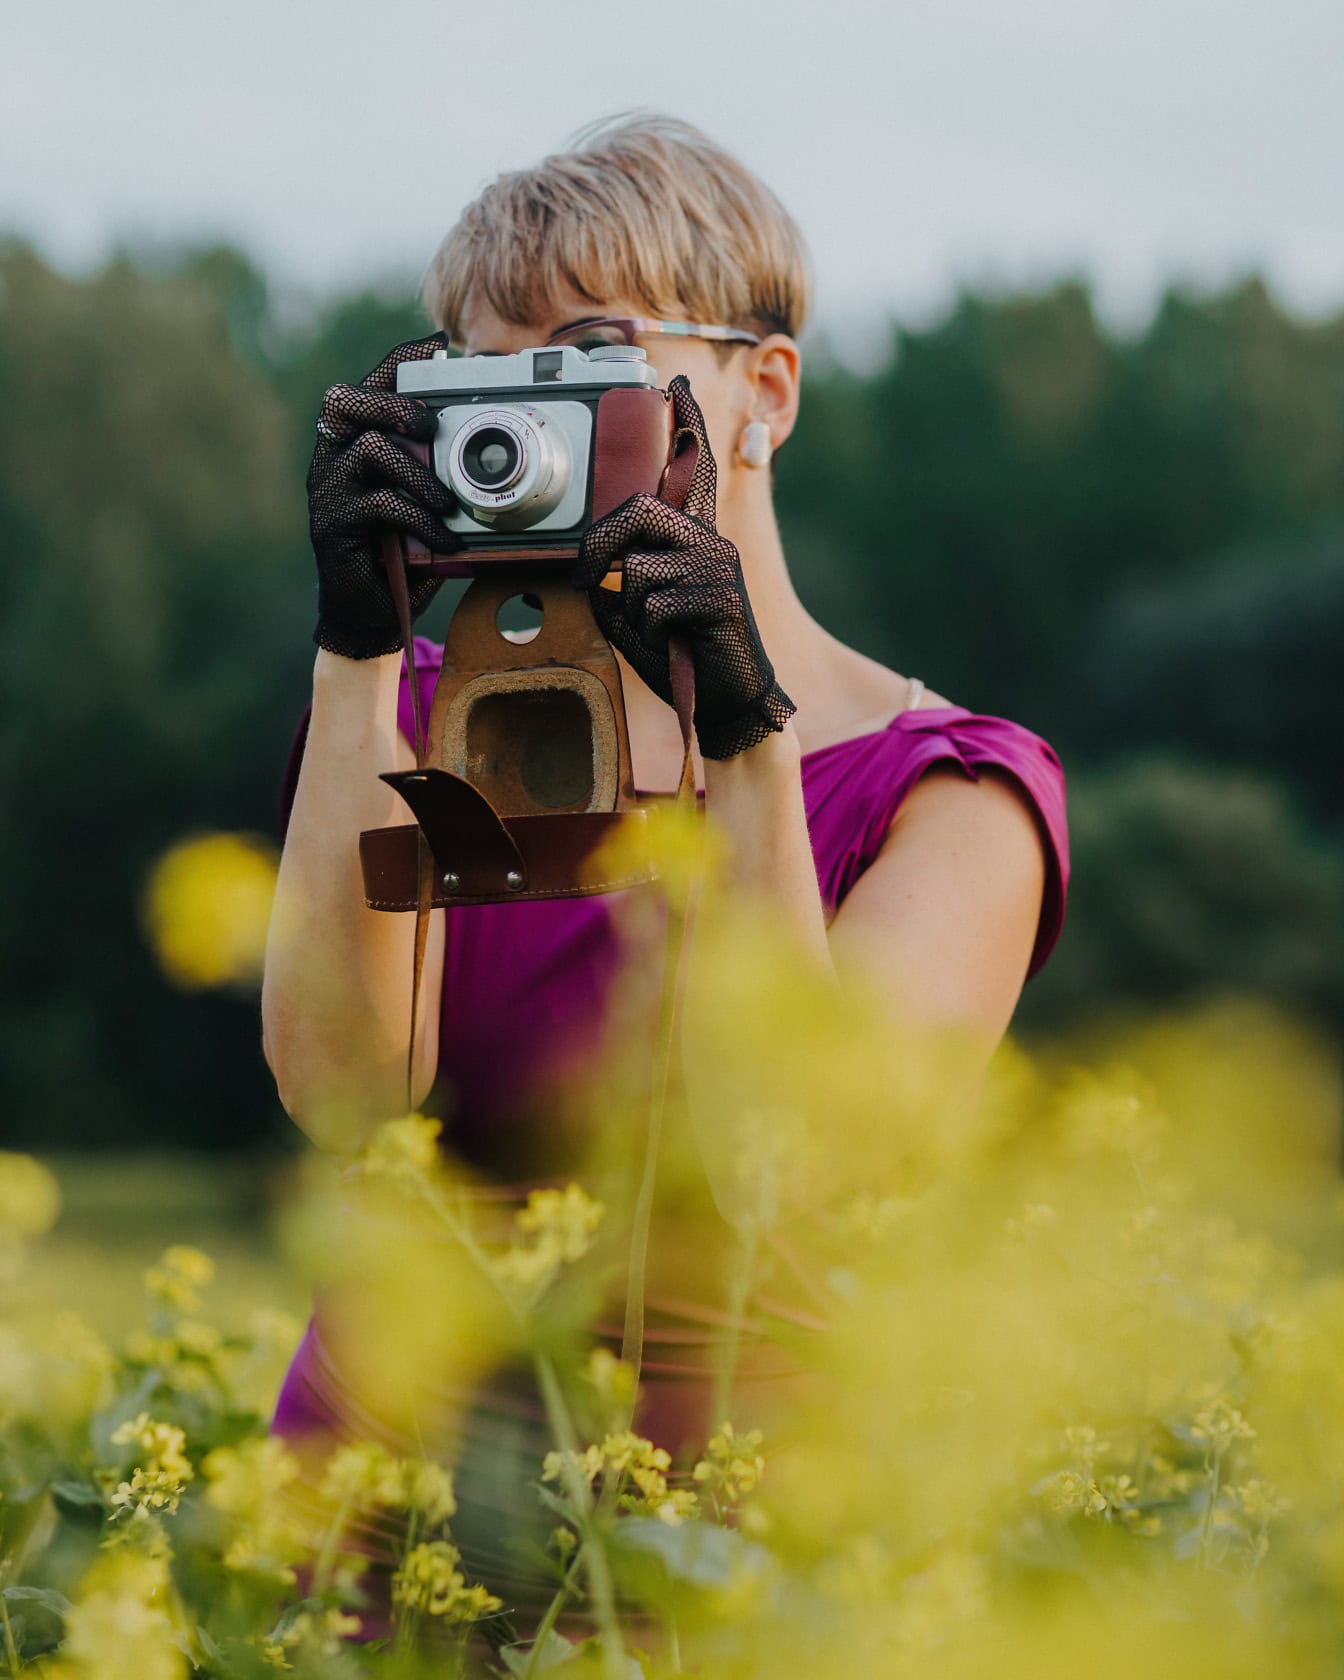 Portretul unei doamne fotograf purtând mănuși de dantelă și ținând o cameră foto analogică veche în fața ei într-un câmp de flori